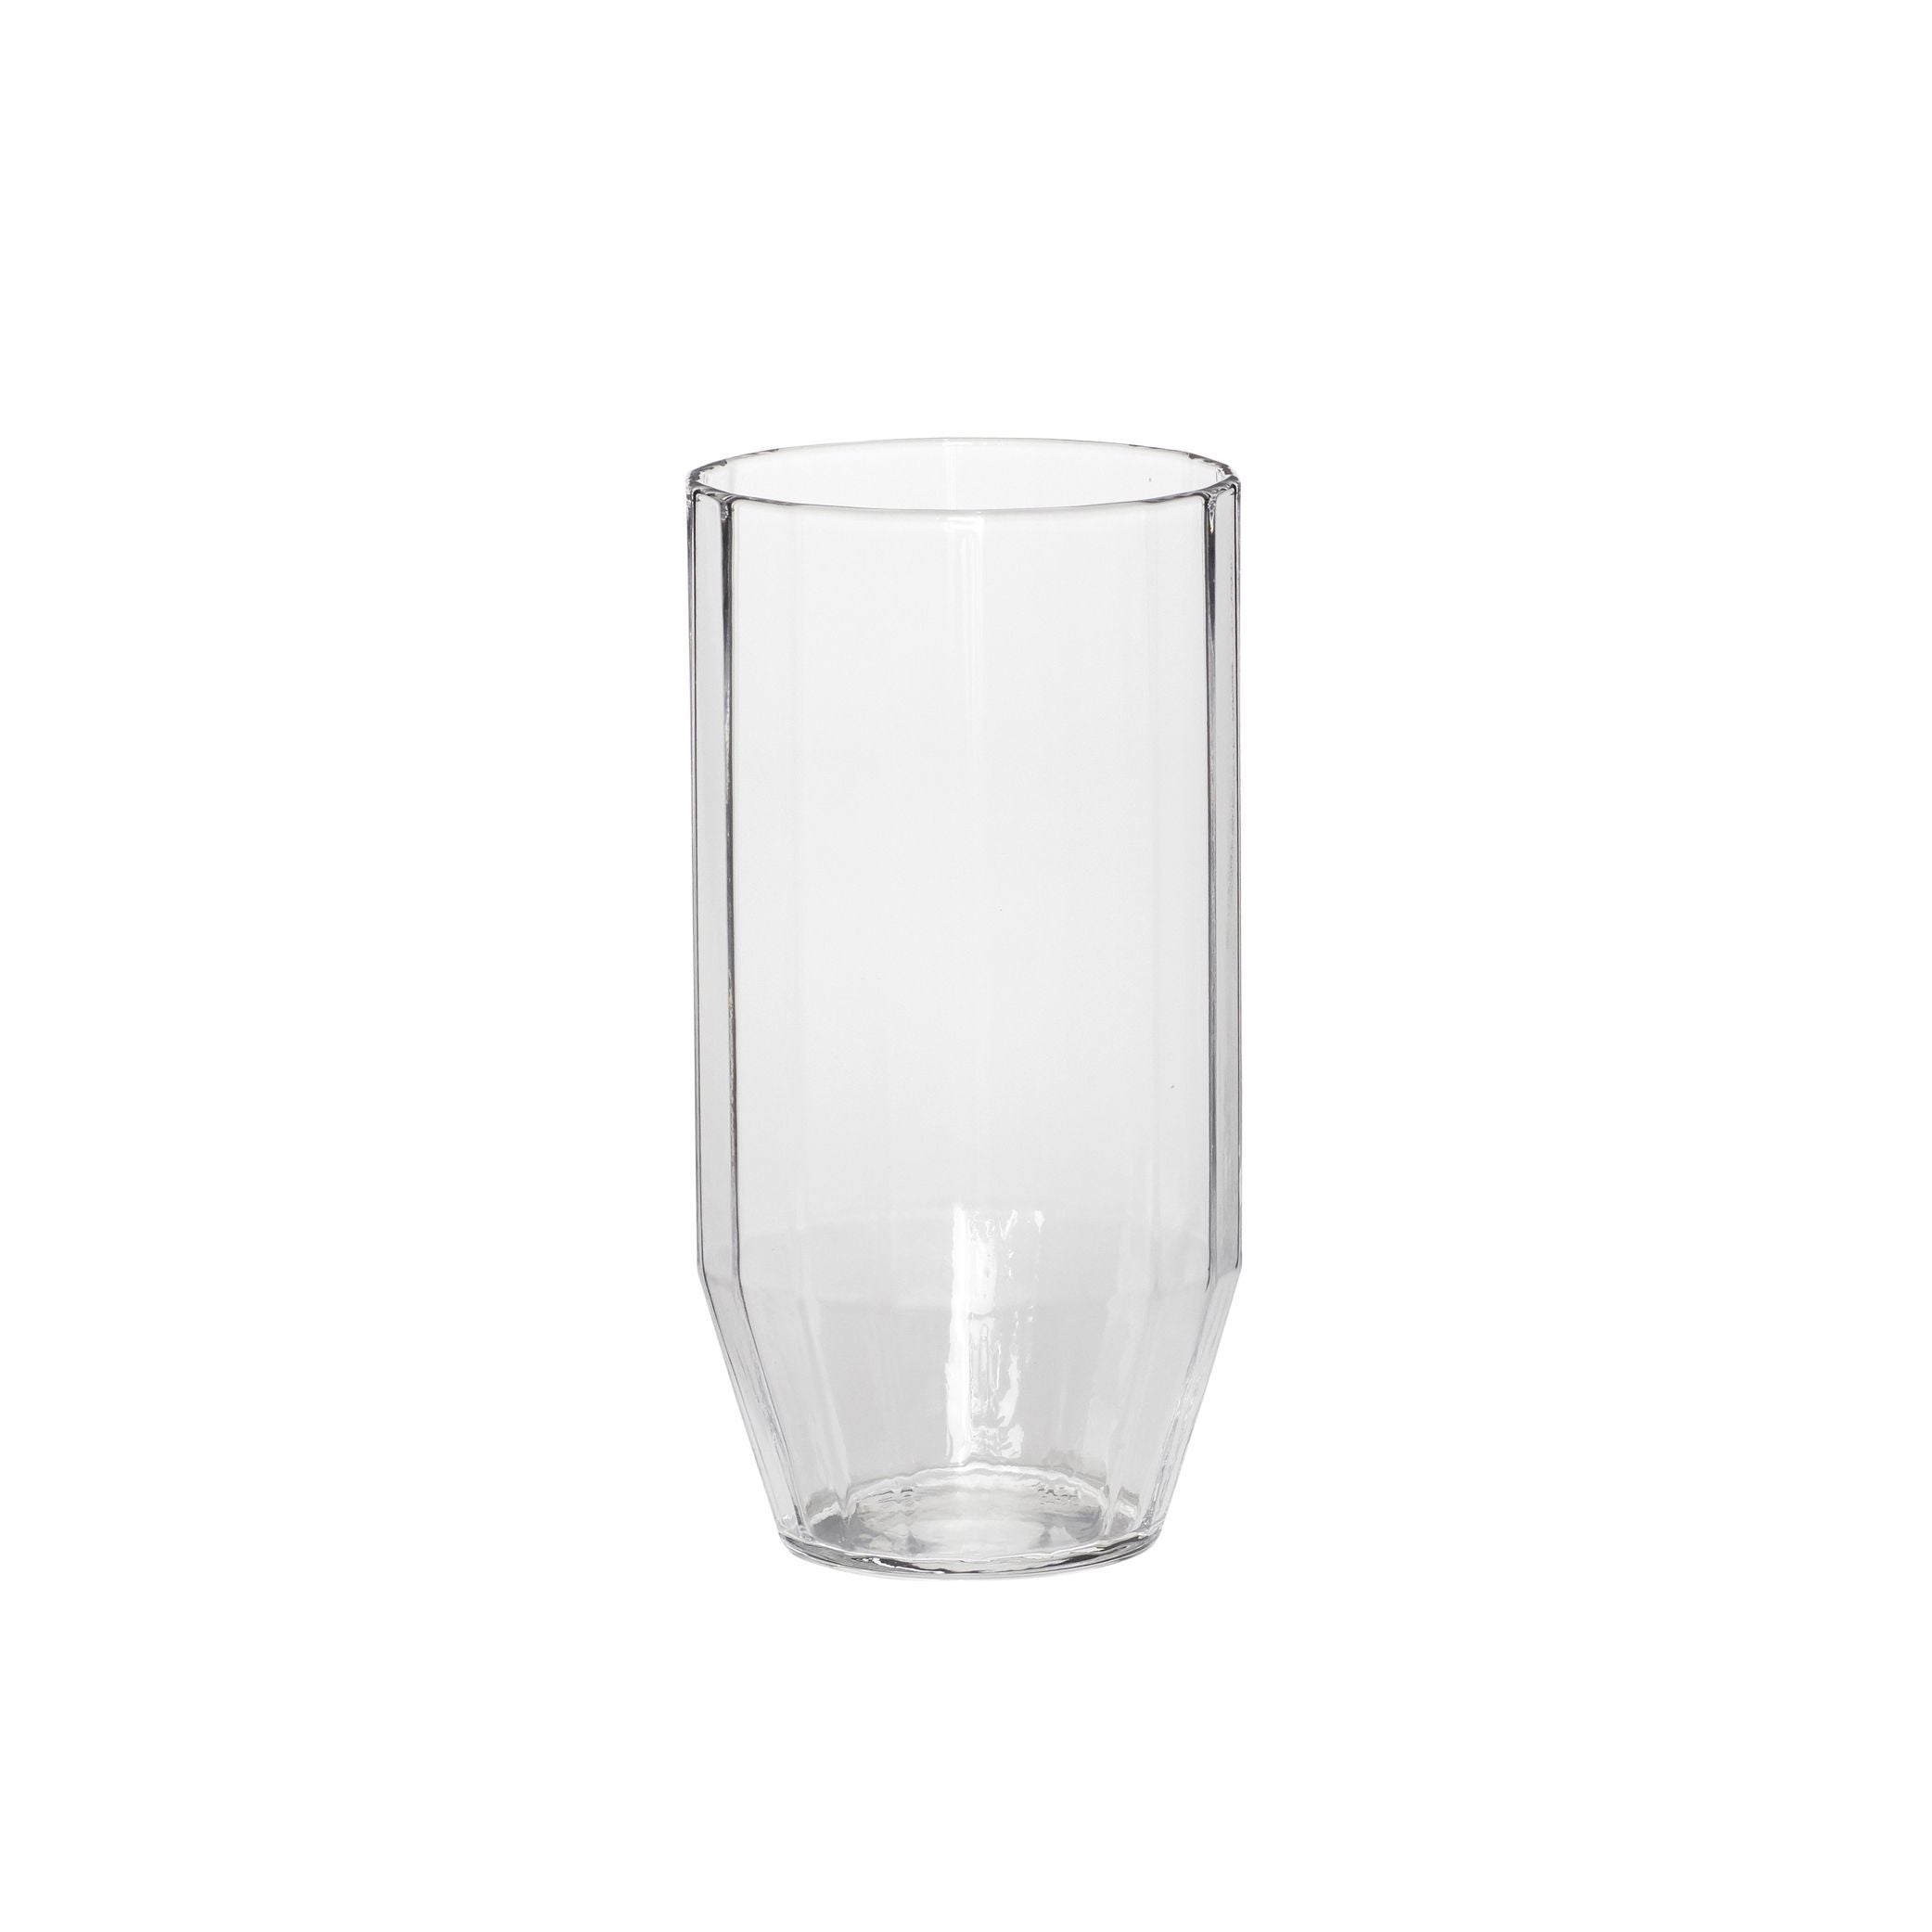 Hübsch Aster Drinking Glass, Clear